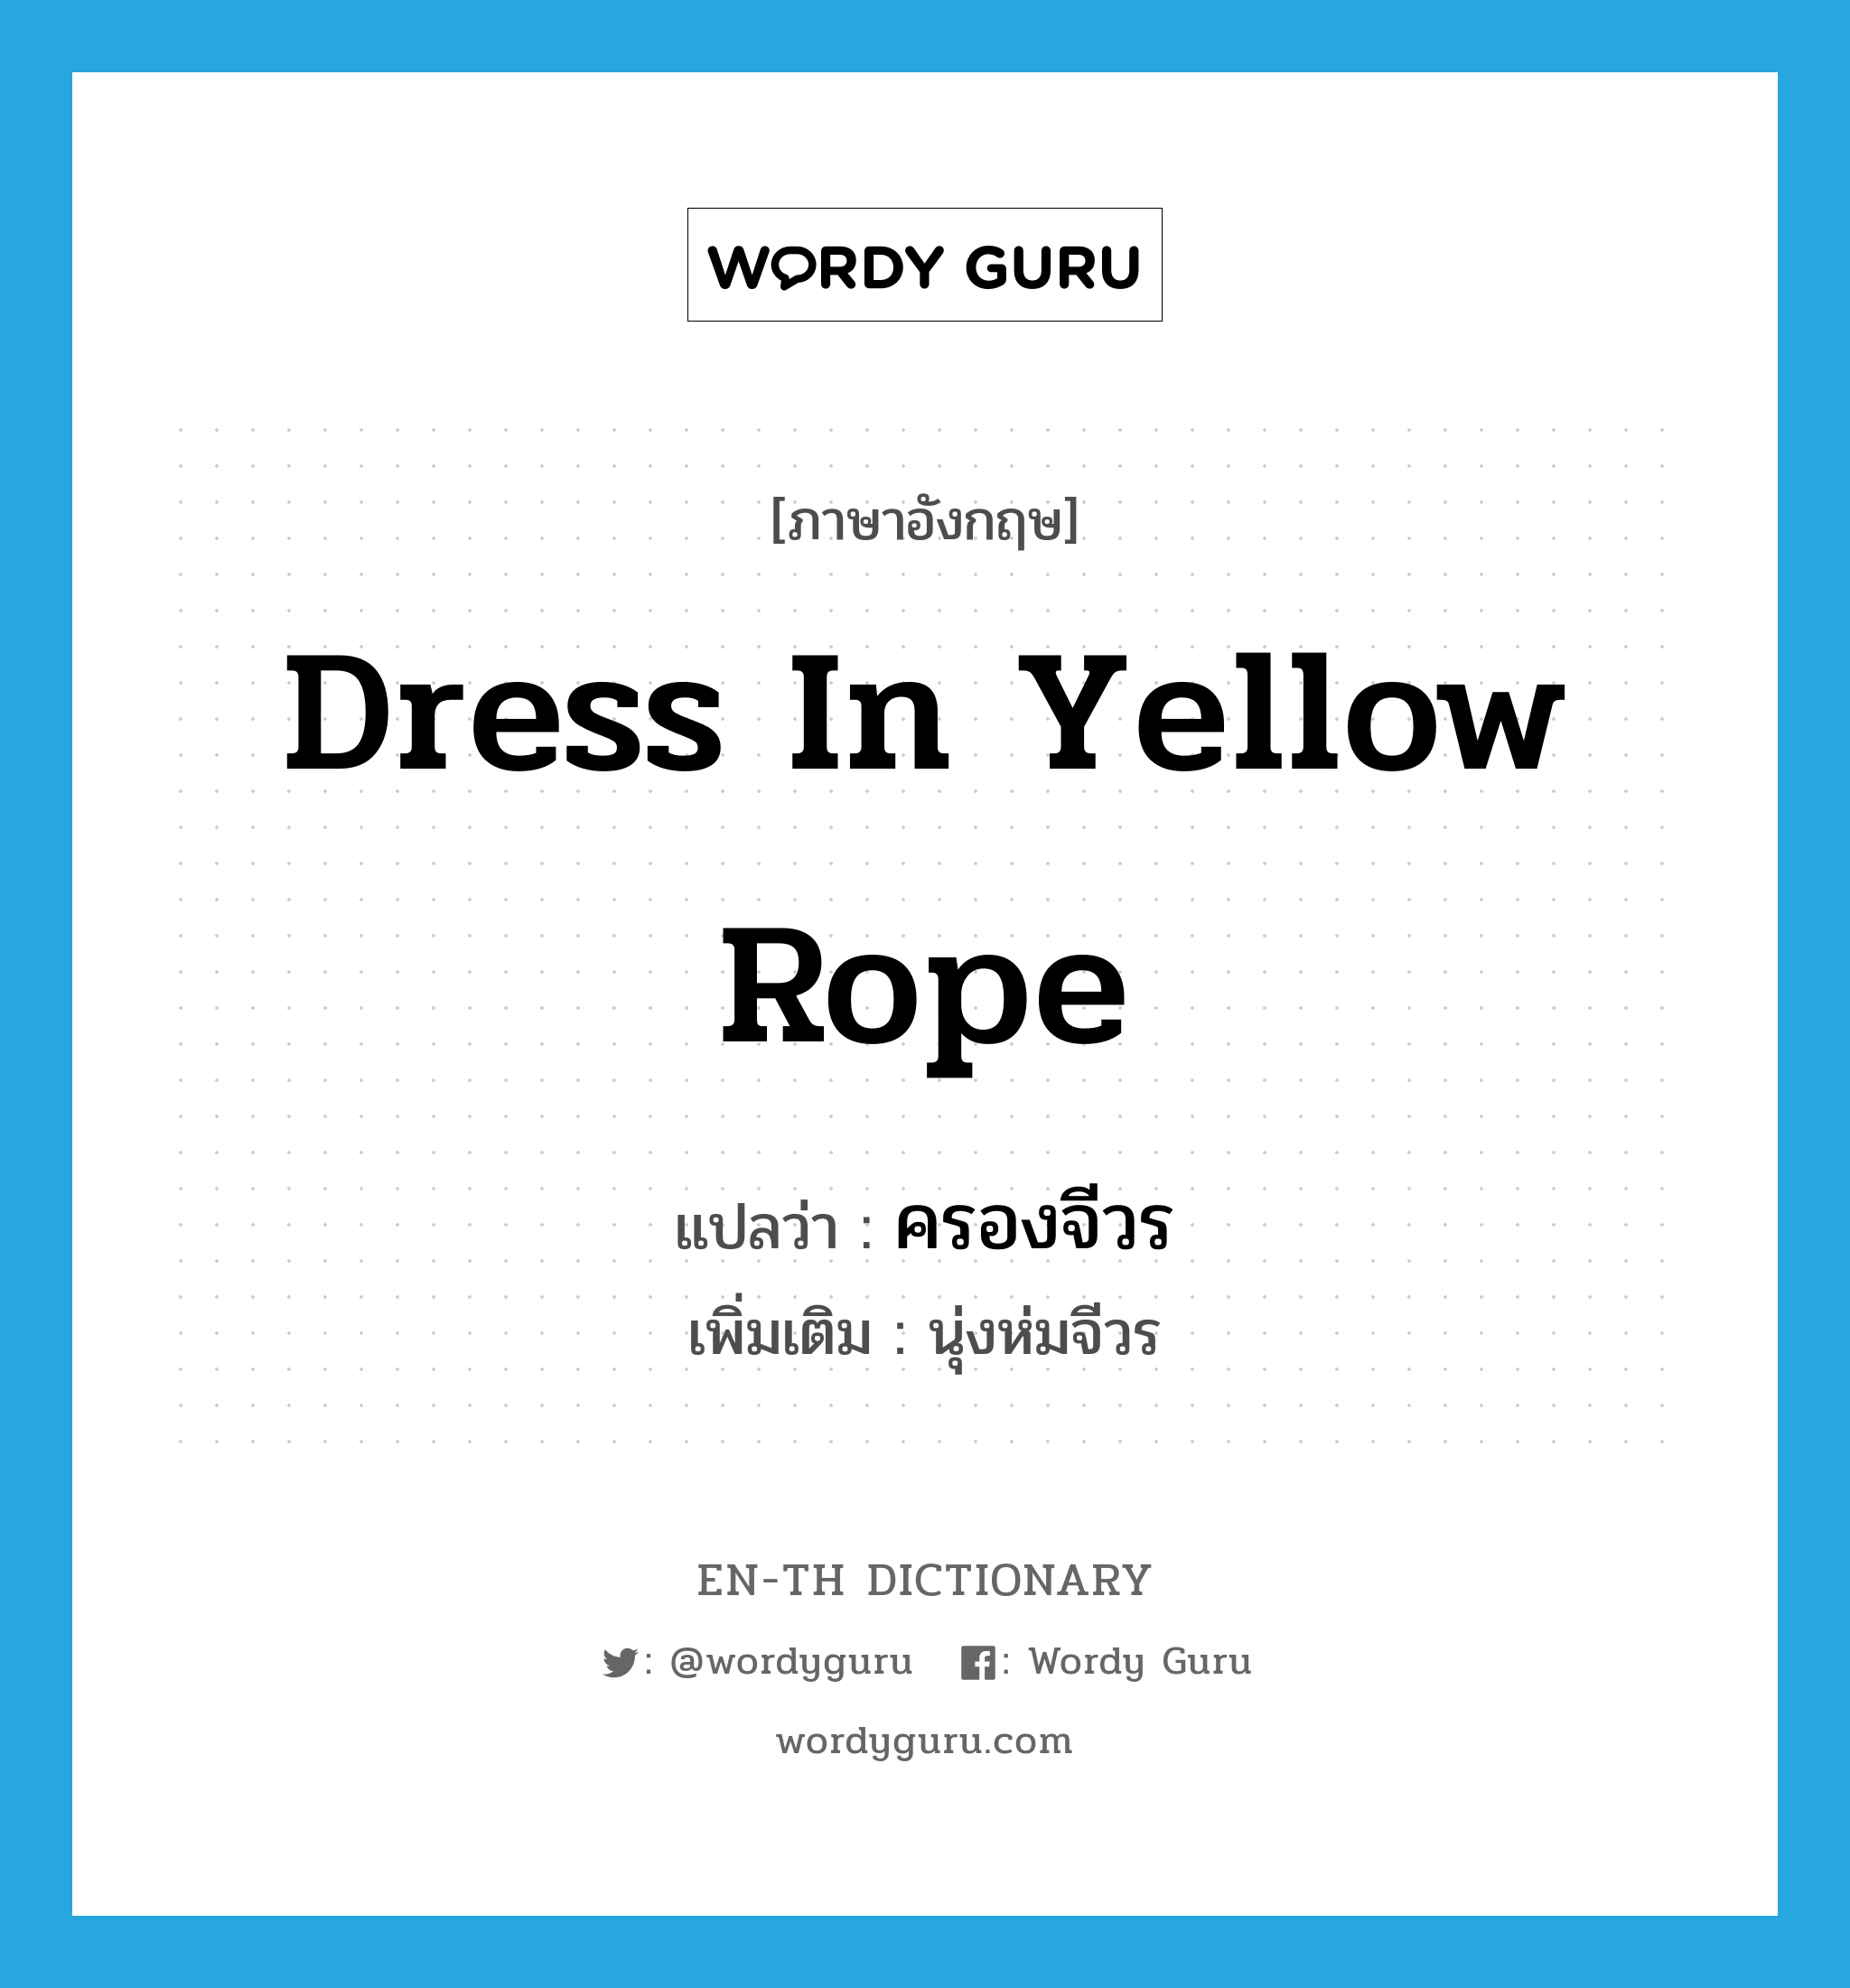 ครองจีวร ภาษาอังกฤษ?, คำศัพท์ภาษาอังกฤษ ครองจีวร แปลว่า dress in yellow rope ประเภท V เพิ่มเติม นุ่งห่มจีวร หมวด V